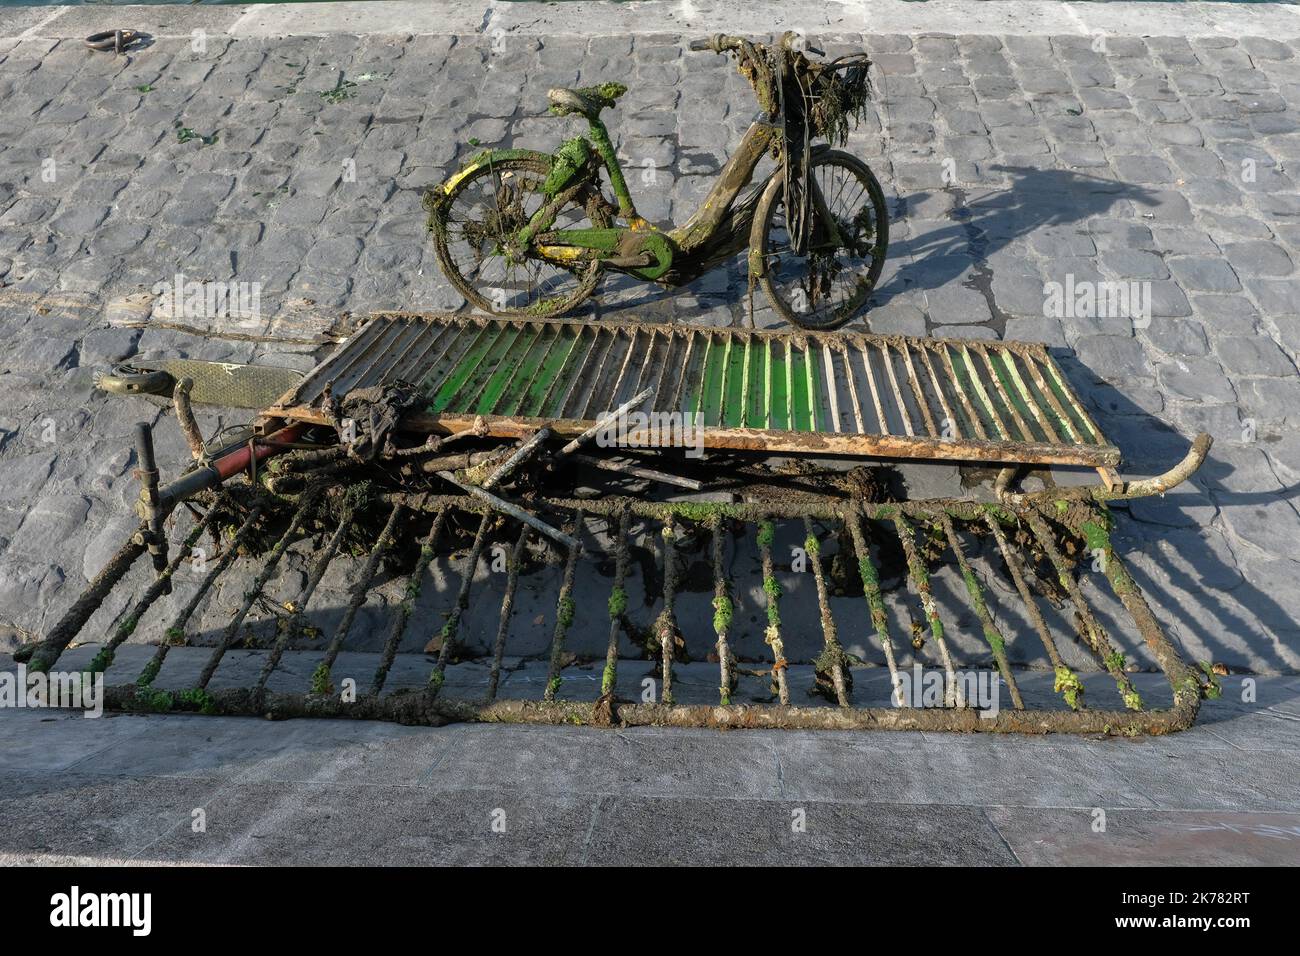 I dipendenti del Municipio di Parigi hanno messo biciclette, velluti, scooter e scooter sulle rive della Senna a Parigi il 21 luglio 2019 Foto Stock